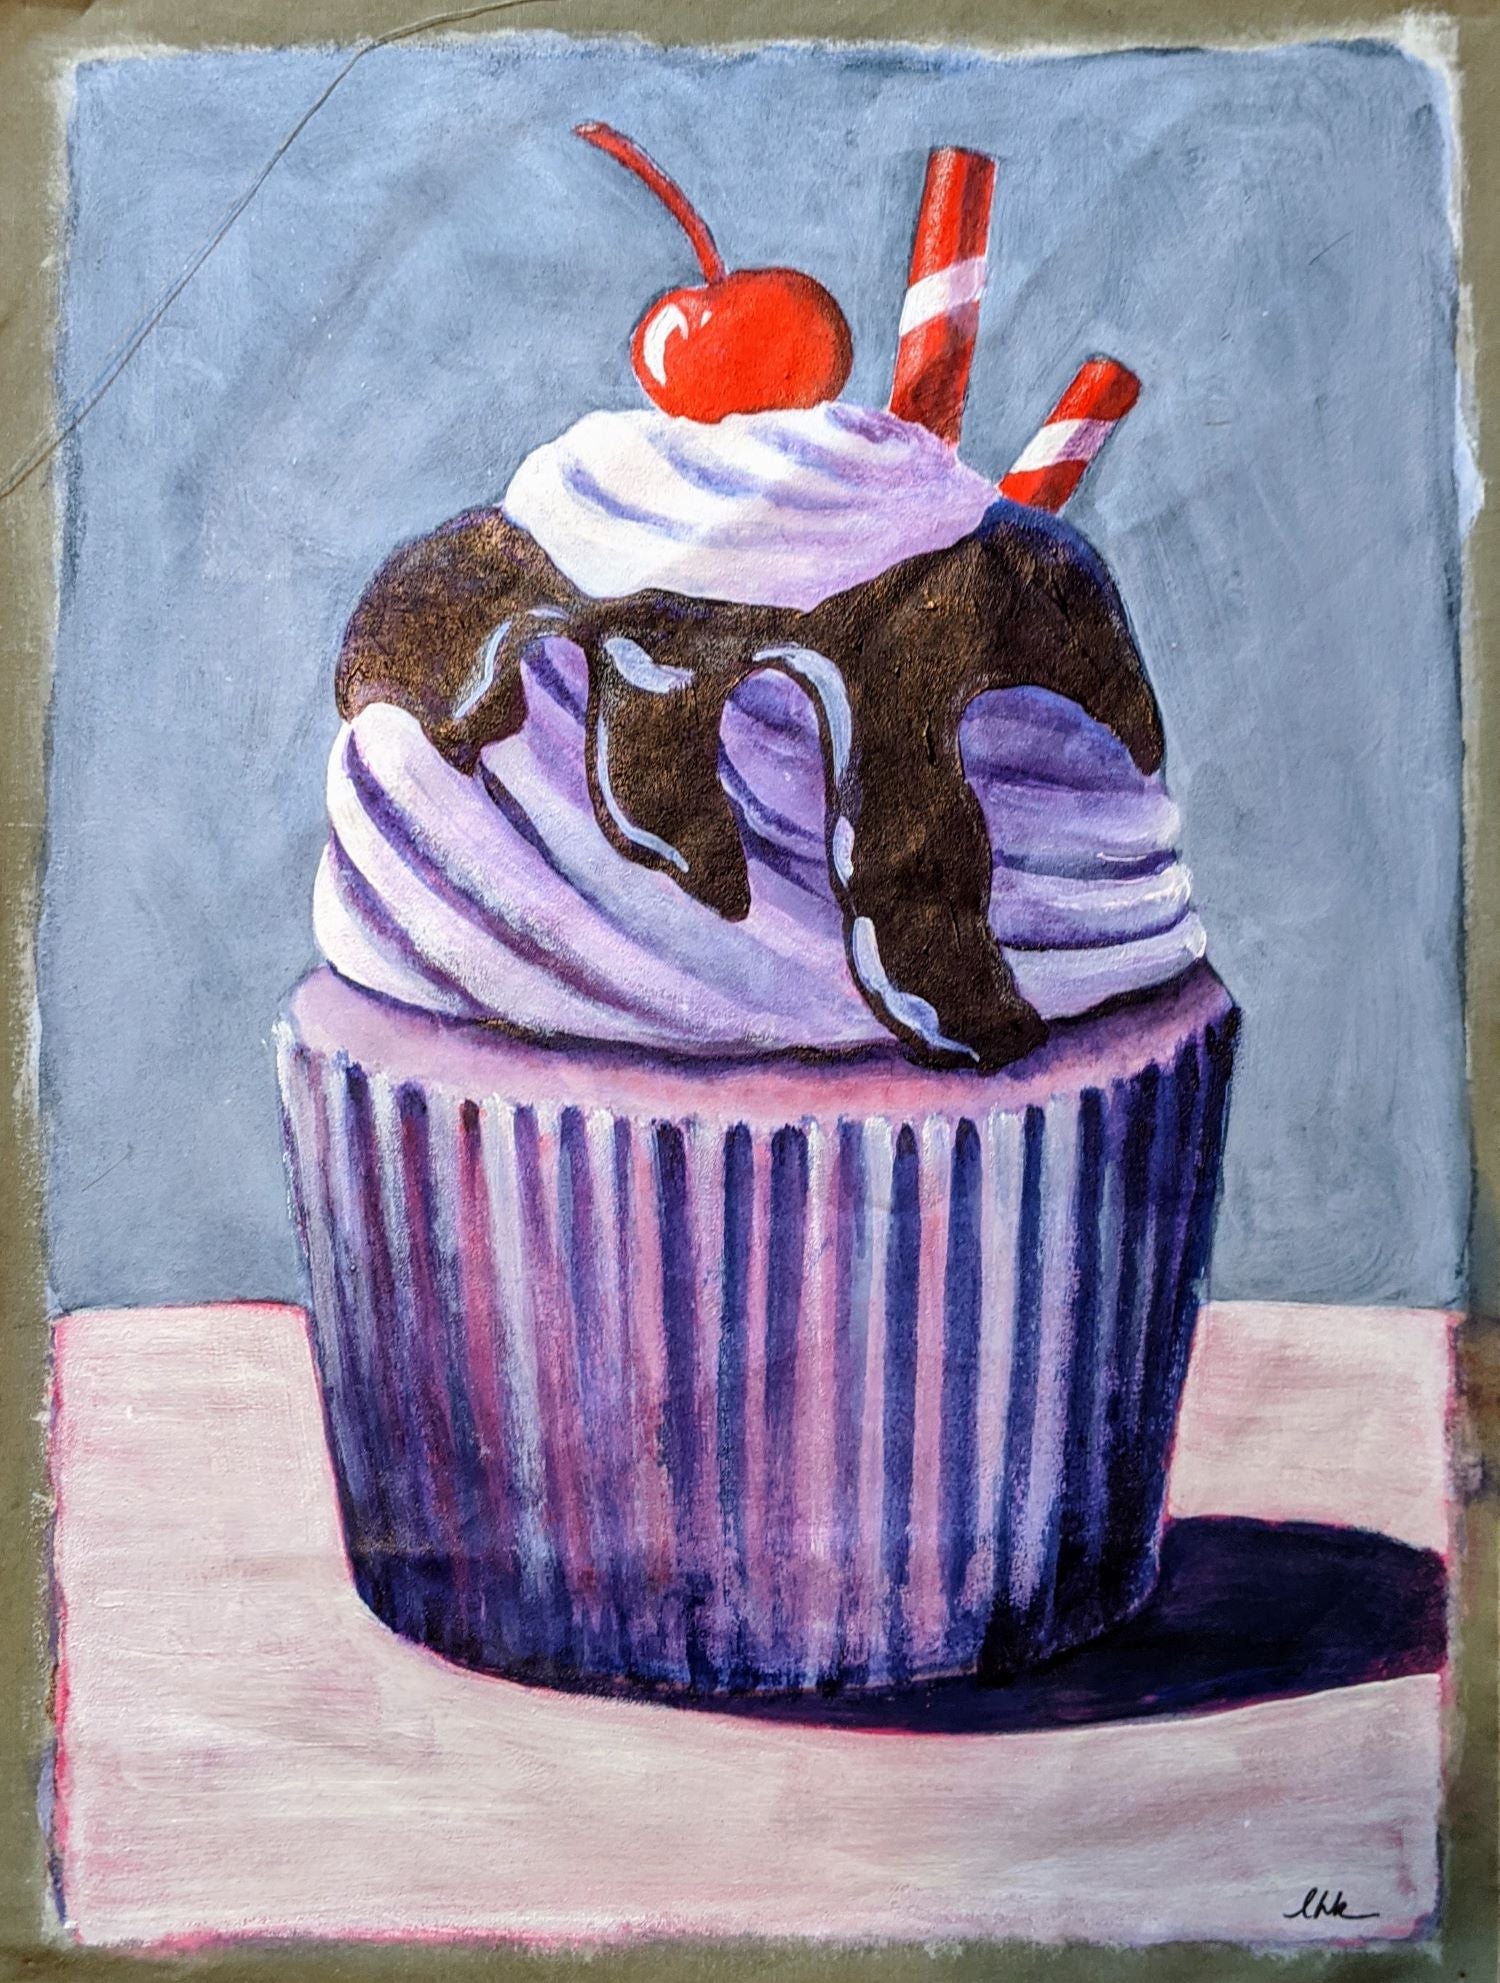 Cupcake acrylic painting